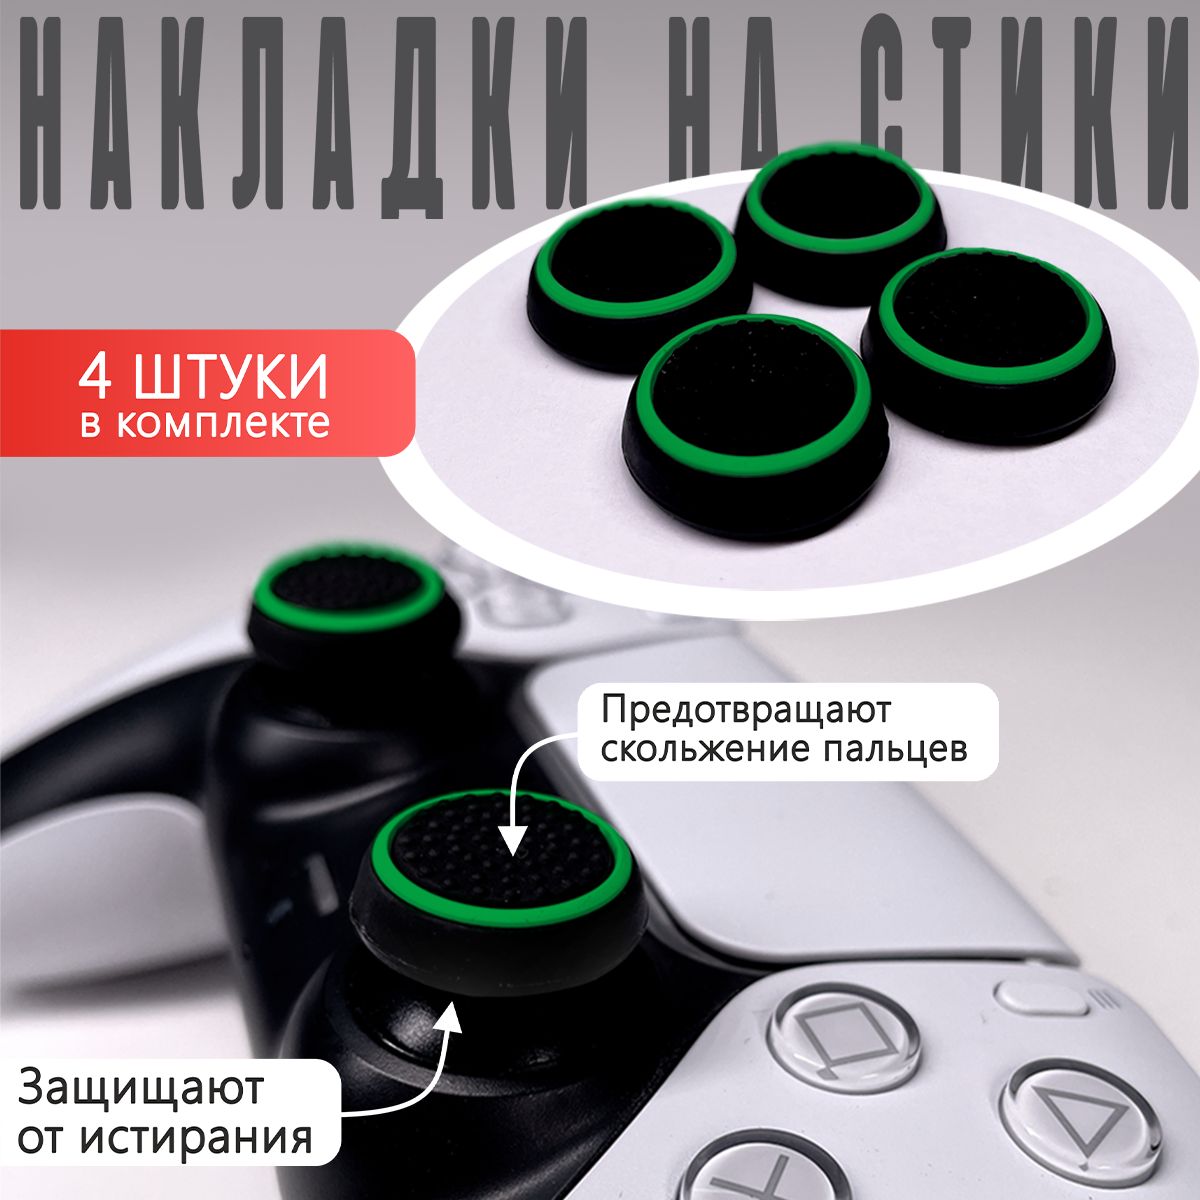 Накладка на стик для геймпада NoBrand Thumb Grips Green, Black – купить в Москве, цены в интернет-магазинах на Мегамаркет